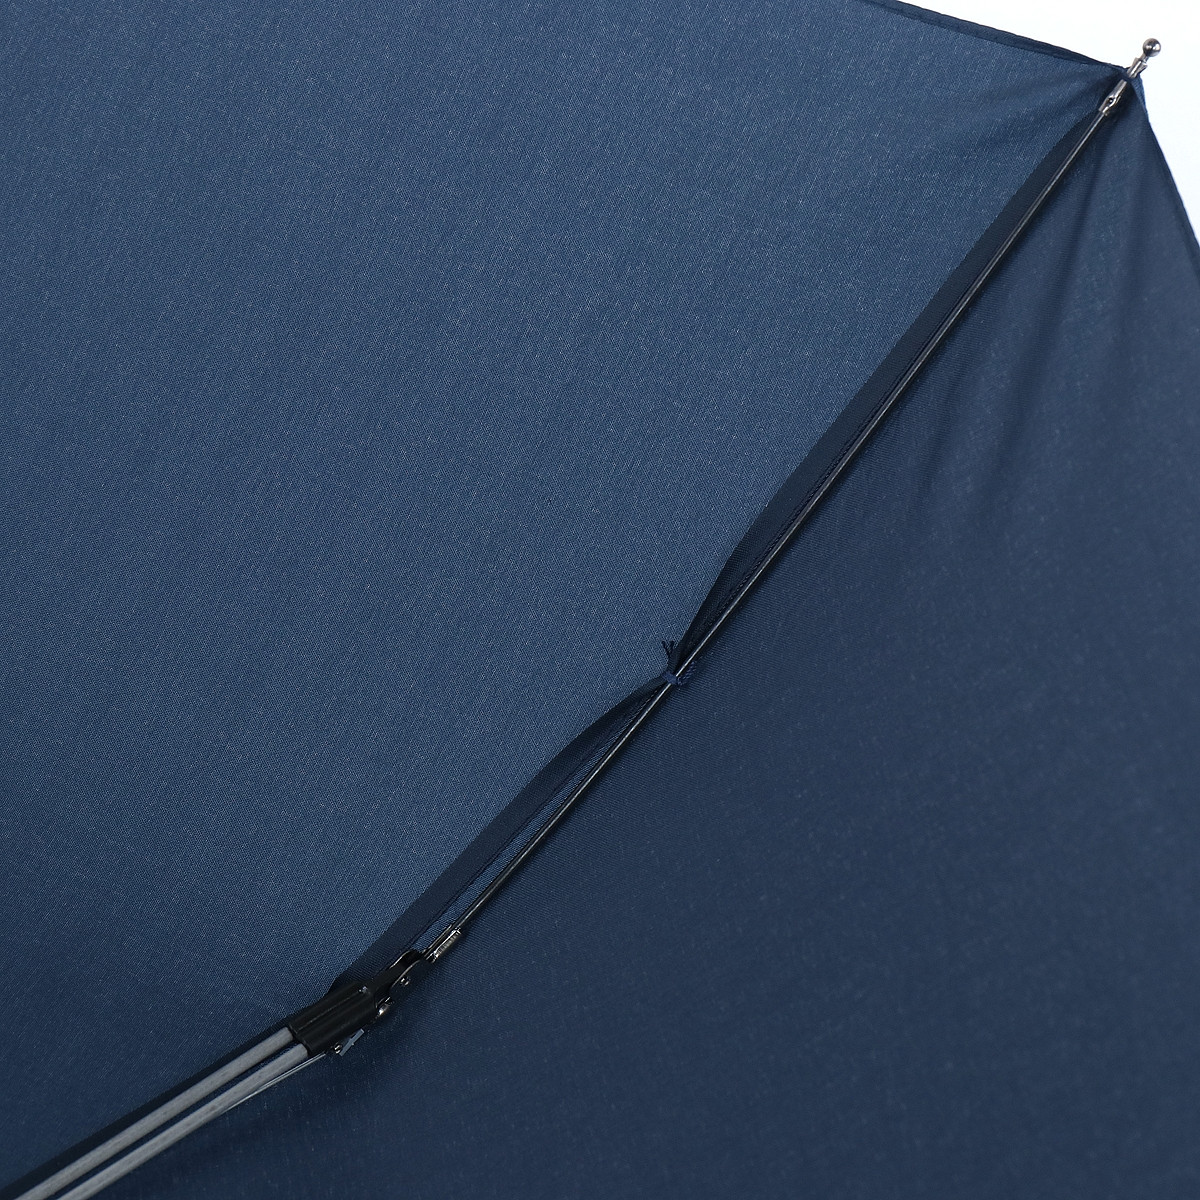 Мужской складной зонтик полный автомат Art Rain синий - фото 5